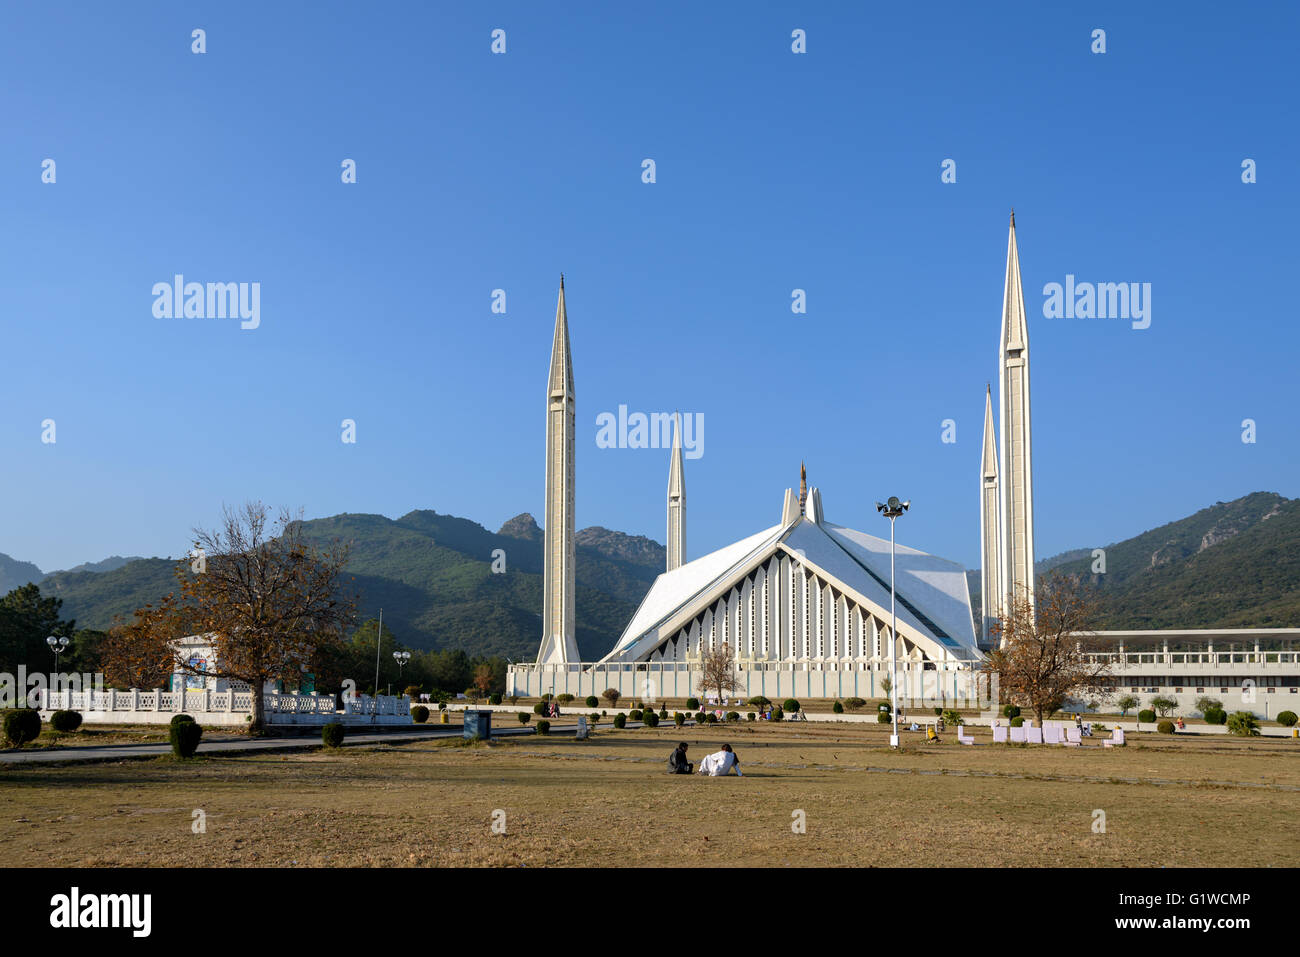 La mosquée Faisal est la plus grande mosquée au Pakistan, situé dans la région de la capitale Islamabad. Banque D'Images